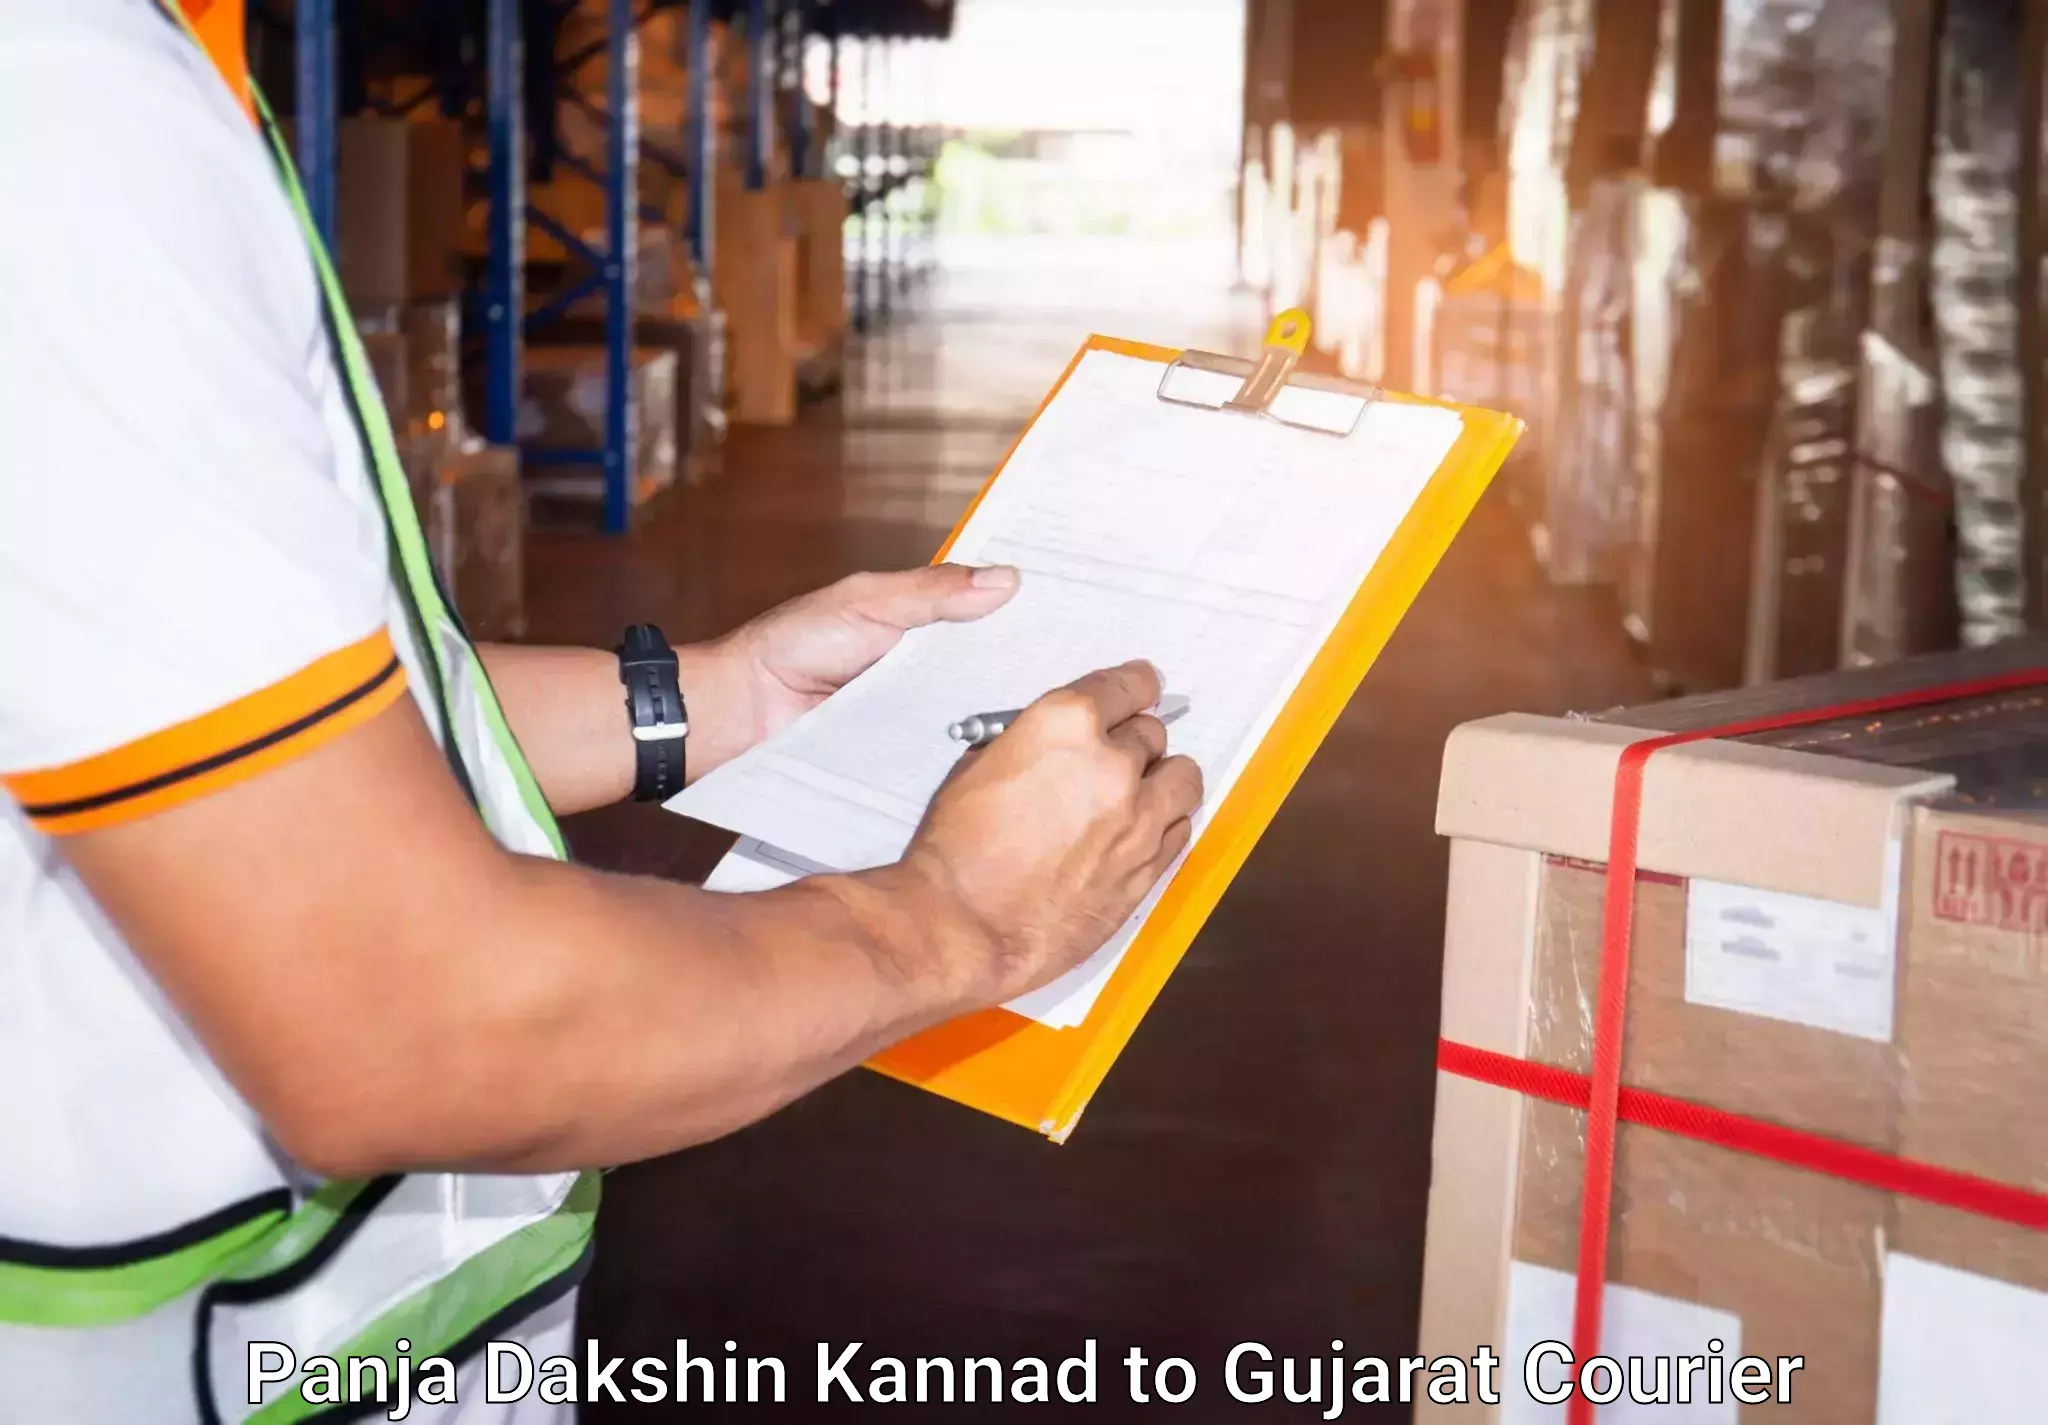 Personal effects shipping in Panja Dakshin Kannad to Kalol Gujarat